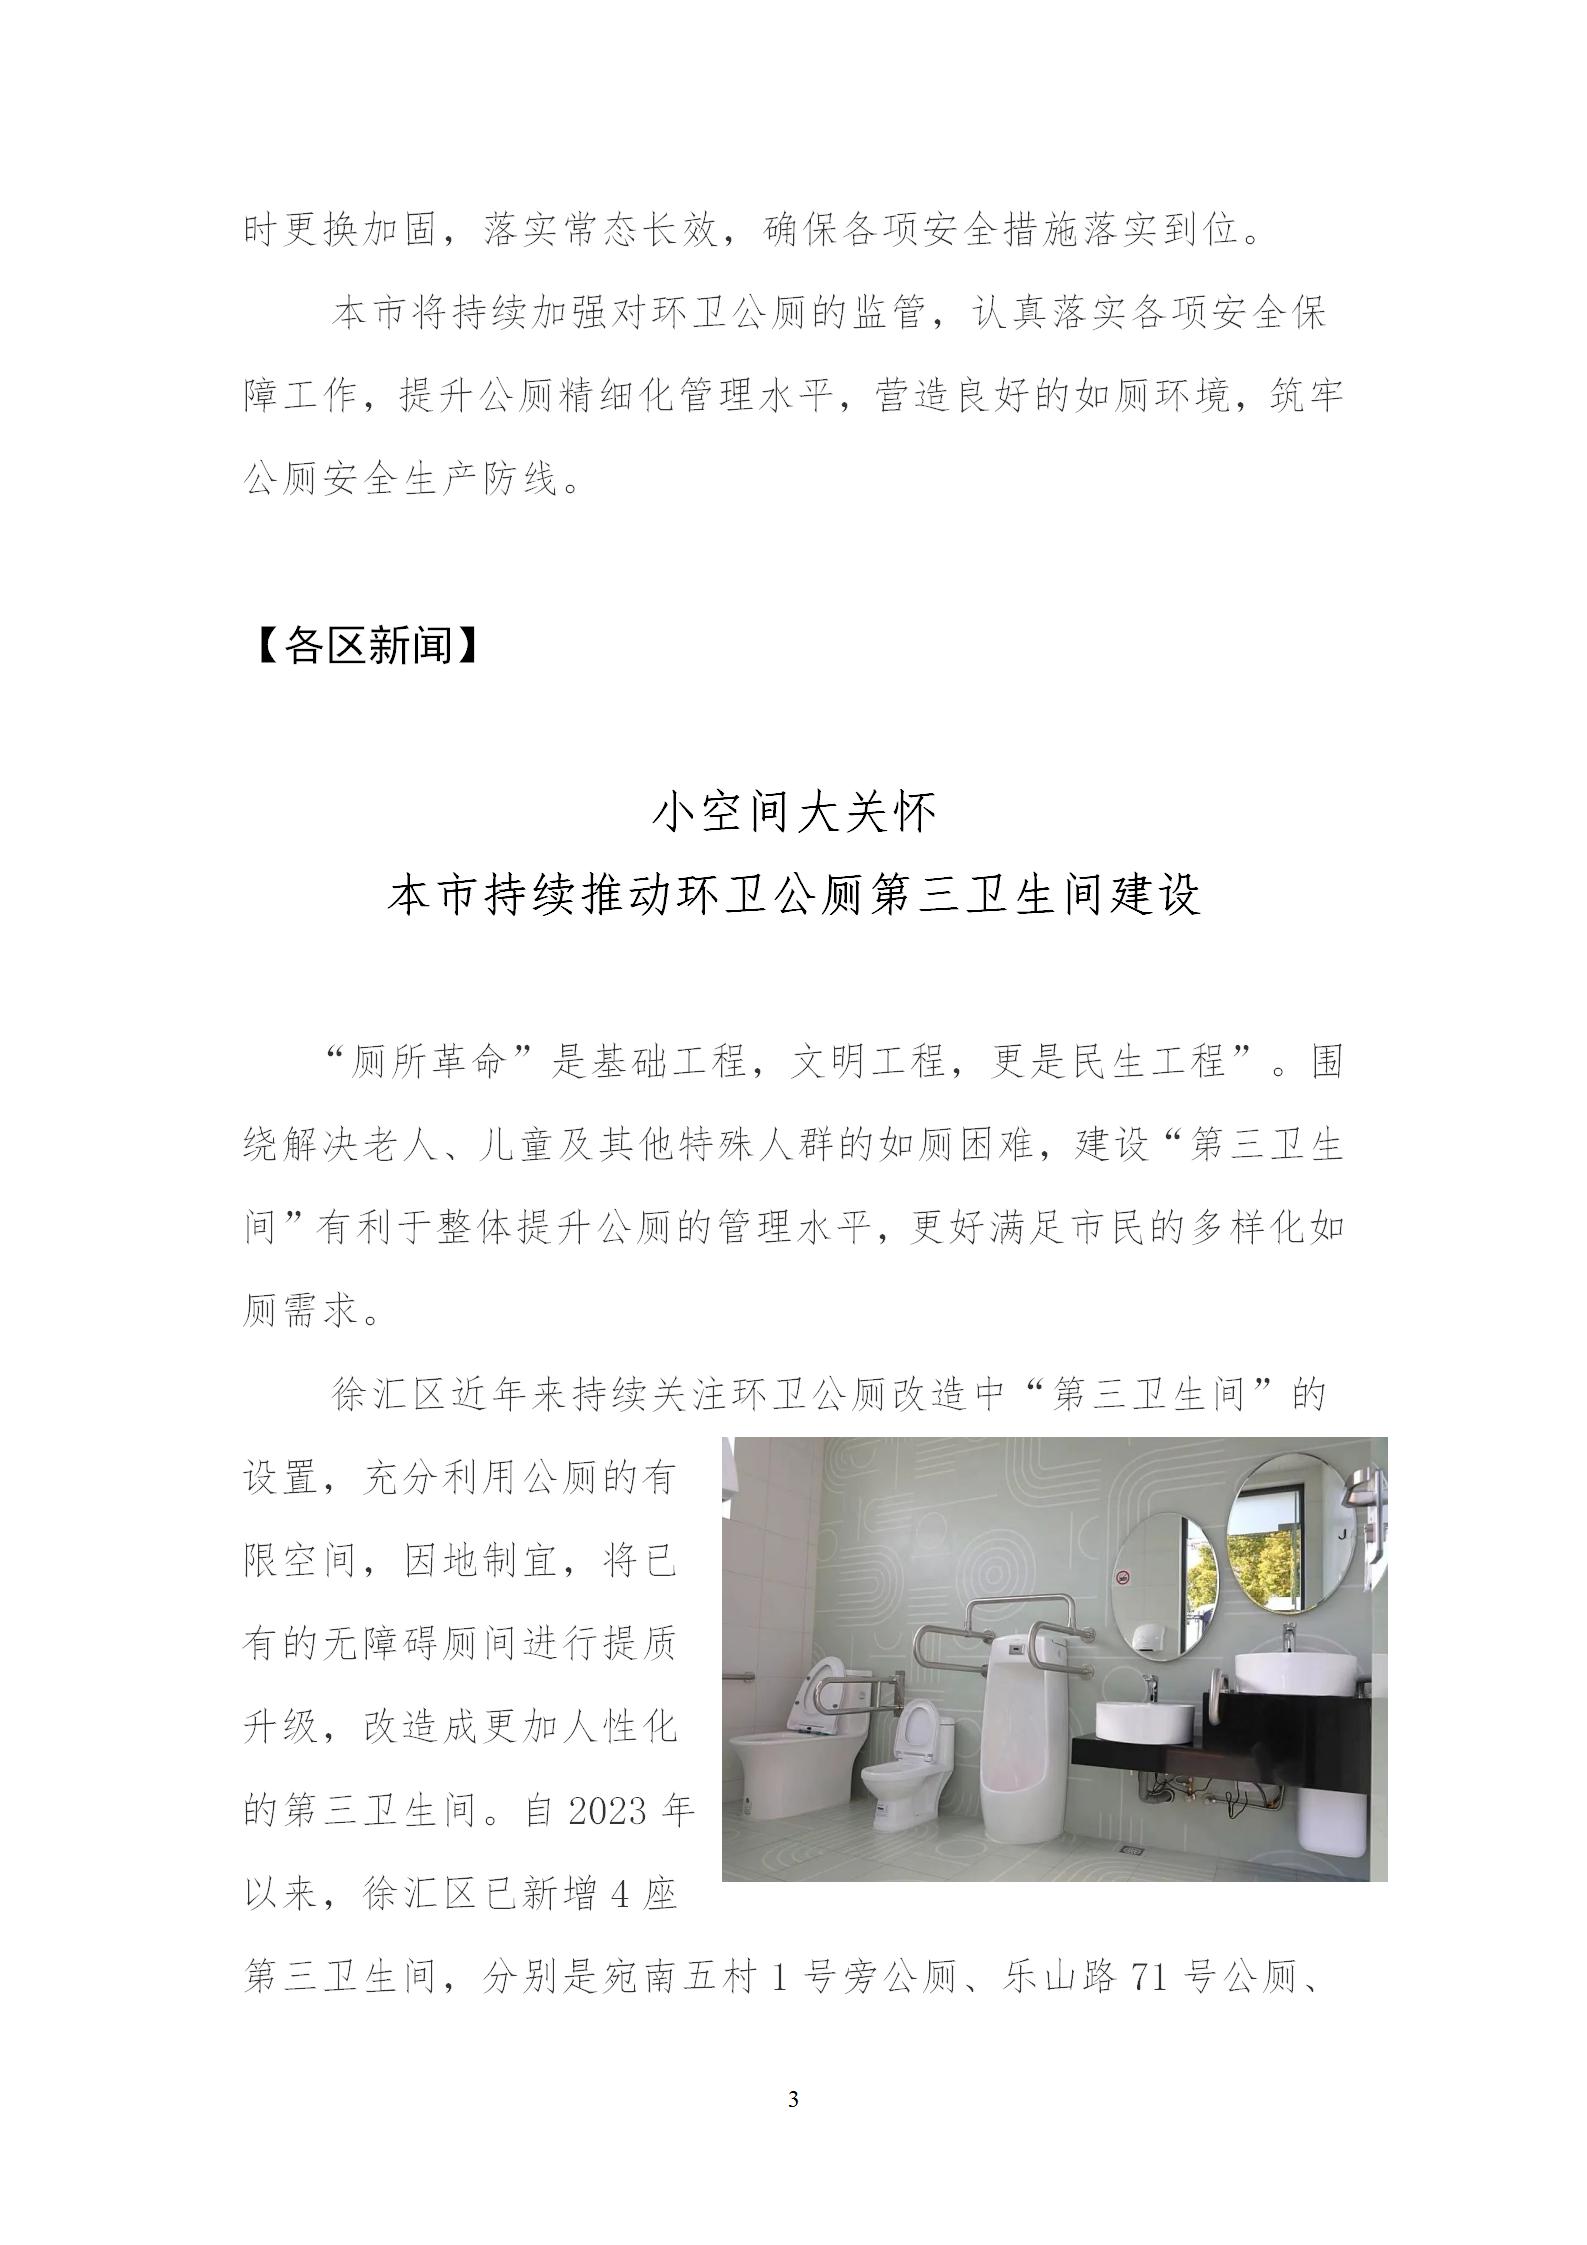 公厕行业文明创建工作月刊202303_03.jpg